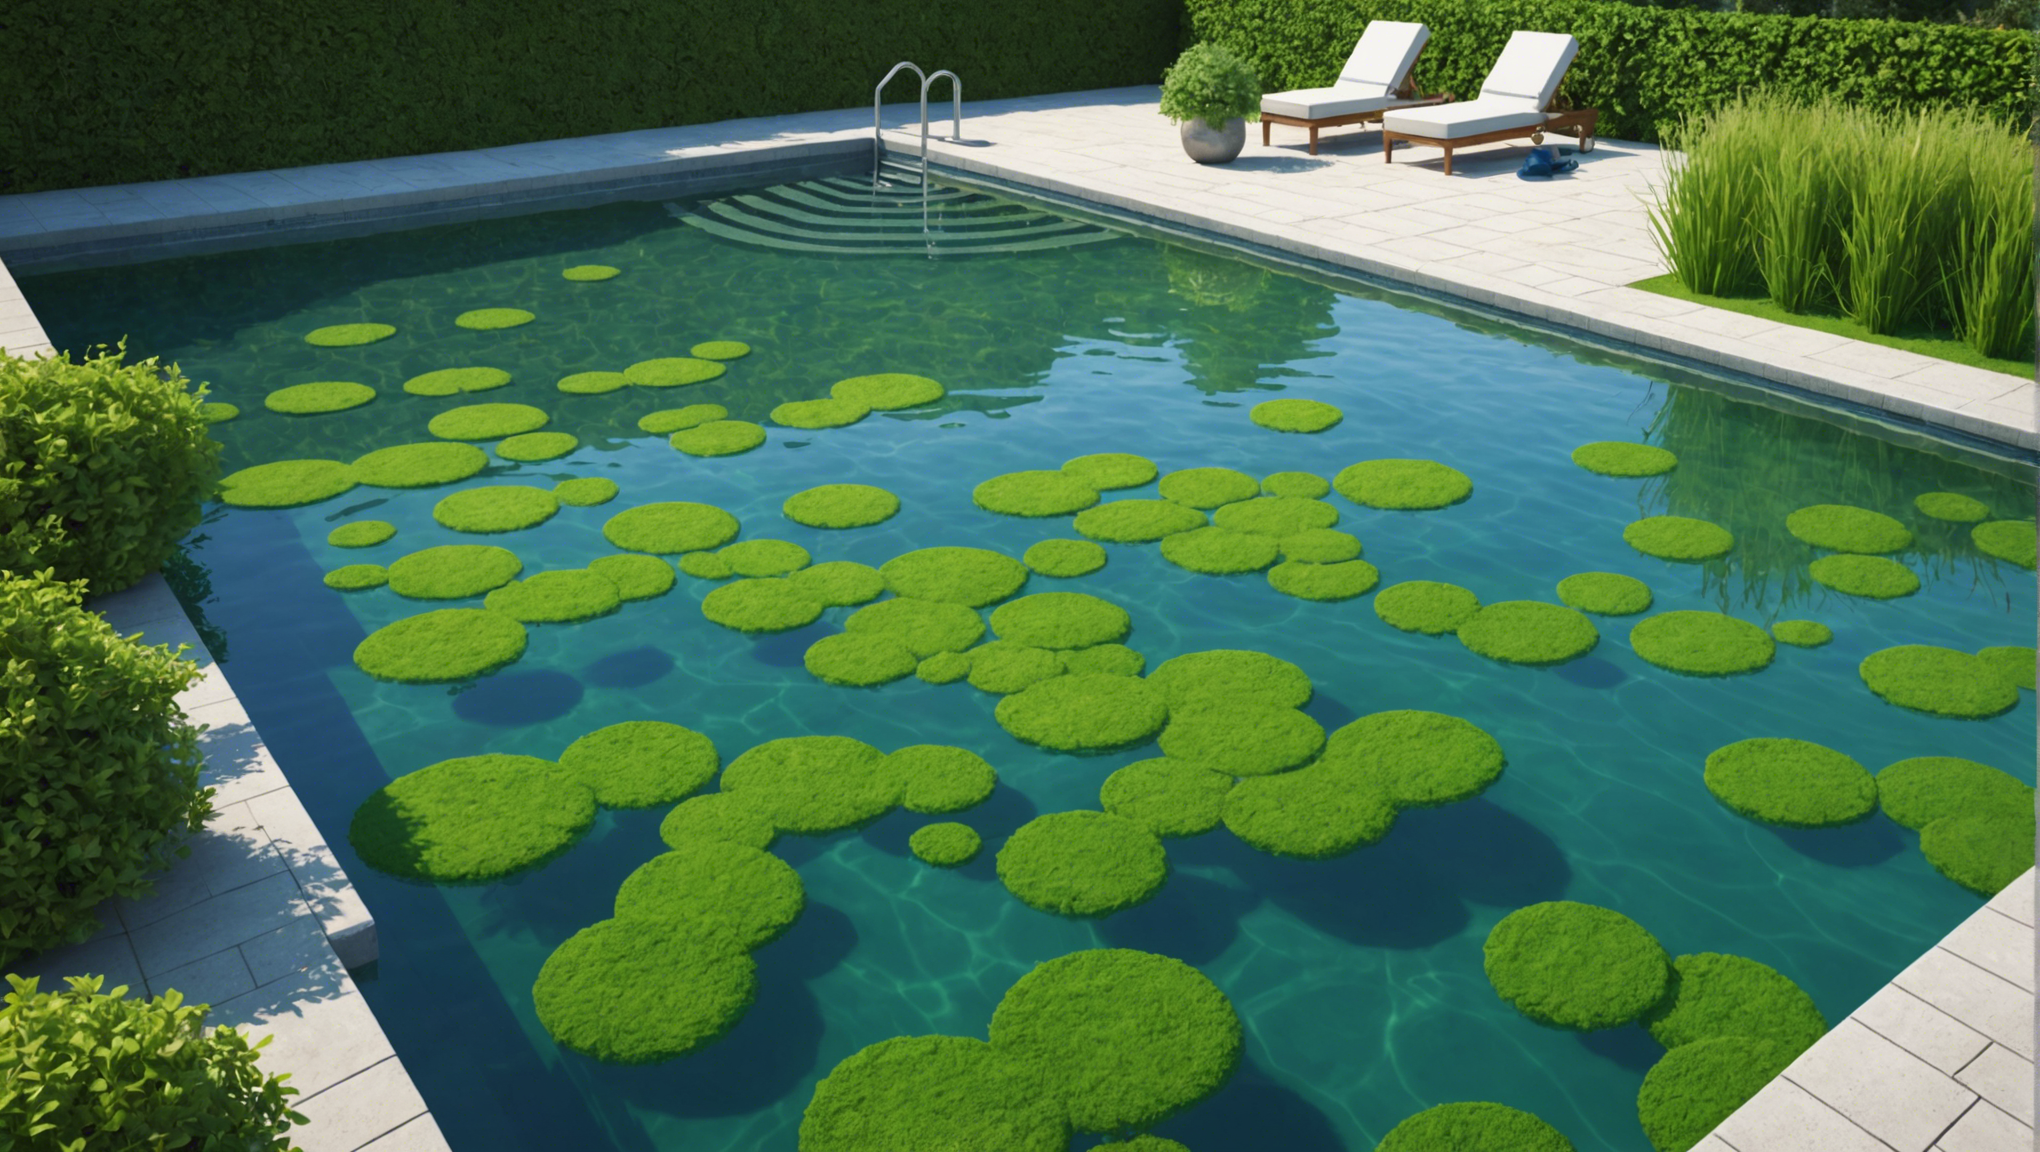 découvrez comment les algues se forment dans une piscine et apprenez à les prévenir. conseils et astuces pour maintenir une eau de piscine claire et saine.